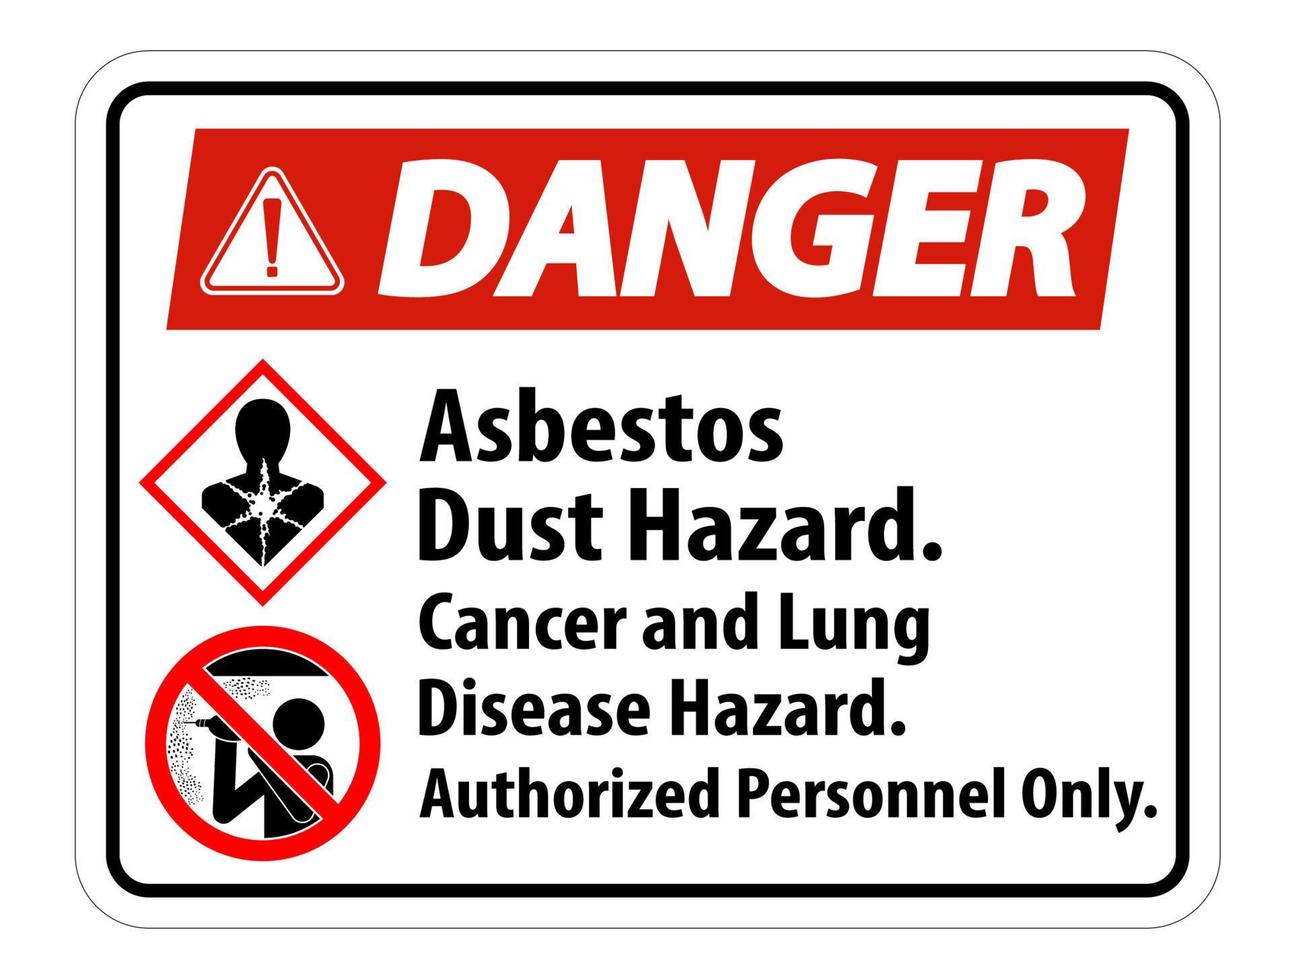 étiquette de sécurité de danger, risque de poussière d'amiante, risque de cancer et de maladie pulmonaire personnel autorisé uniquement vecteur